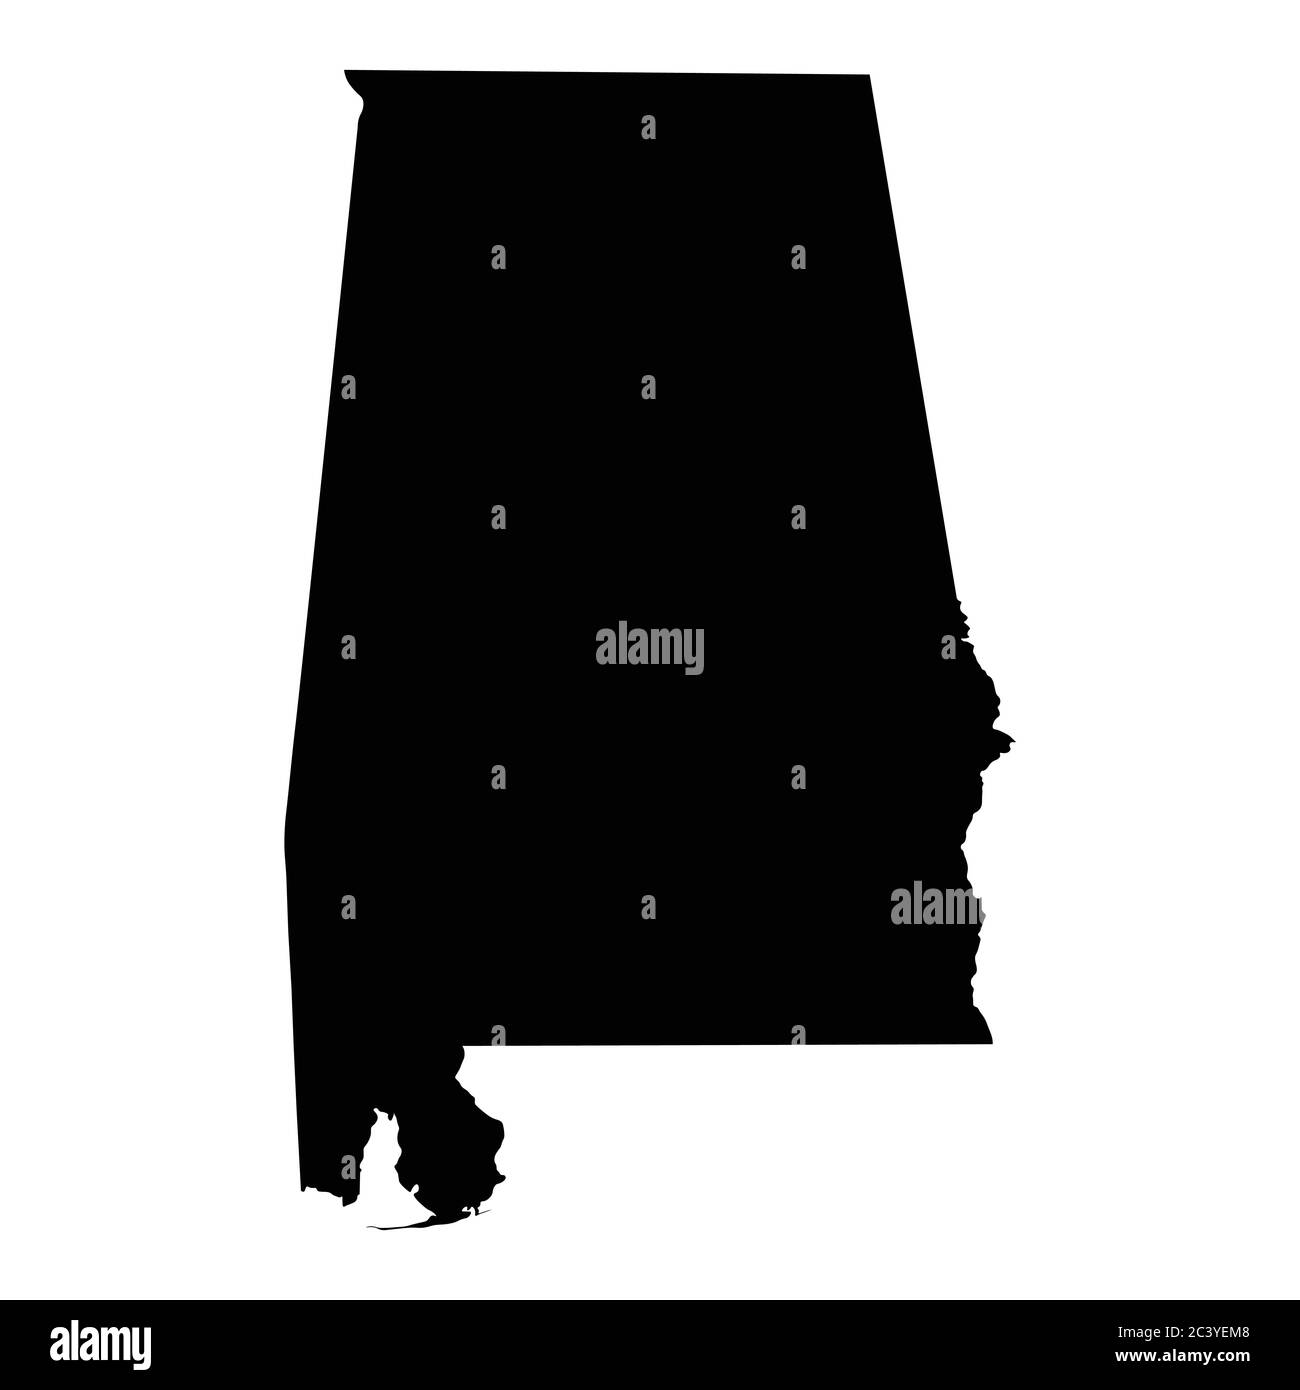 Alabama AL State Karte USA. Schwarze Silhouette solide isolierte Karte auf weißem Hintergrund. EPS-Vektor Stock Vektor